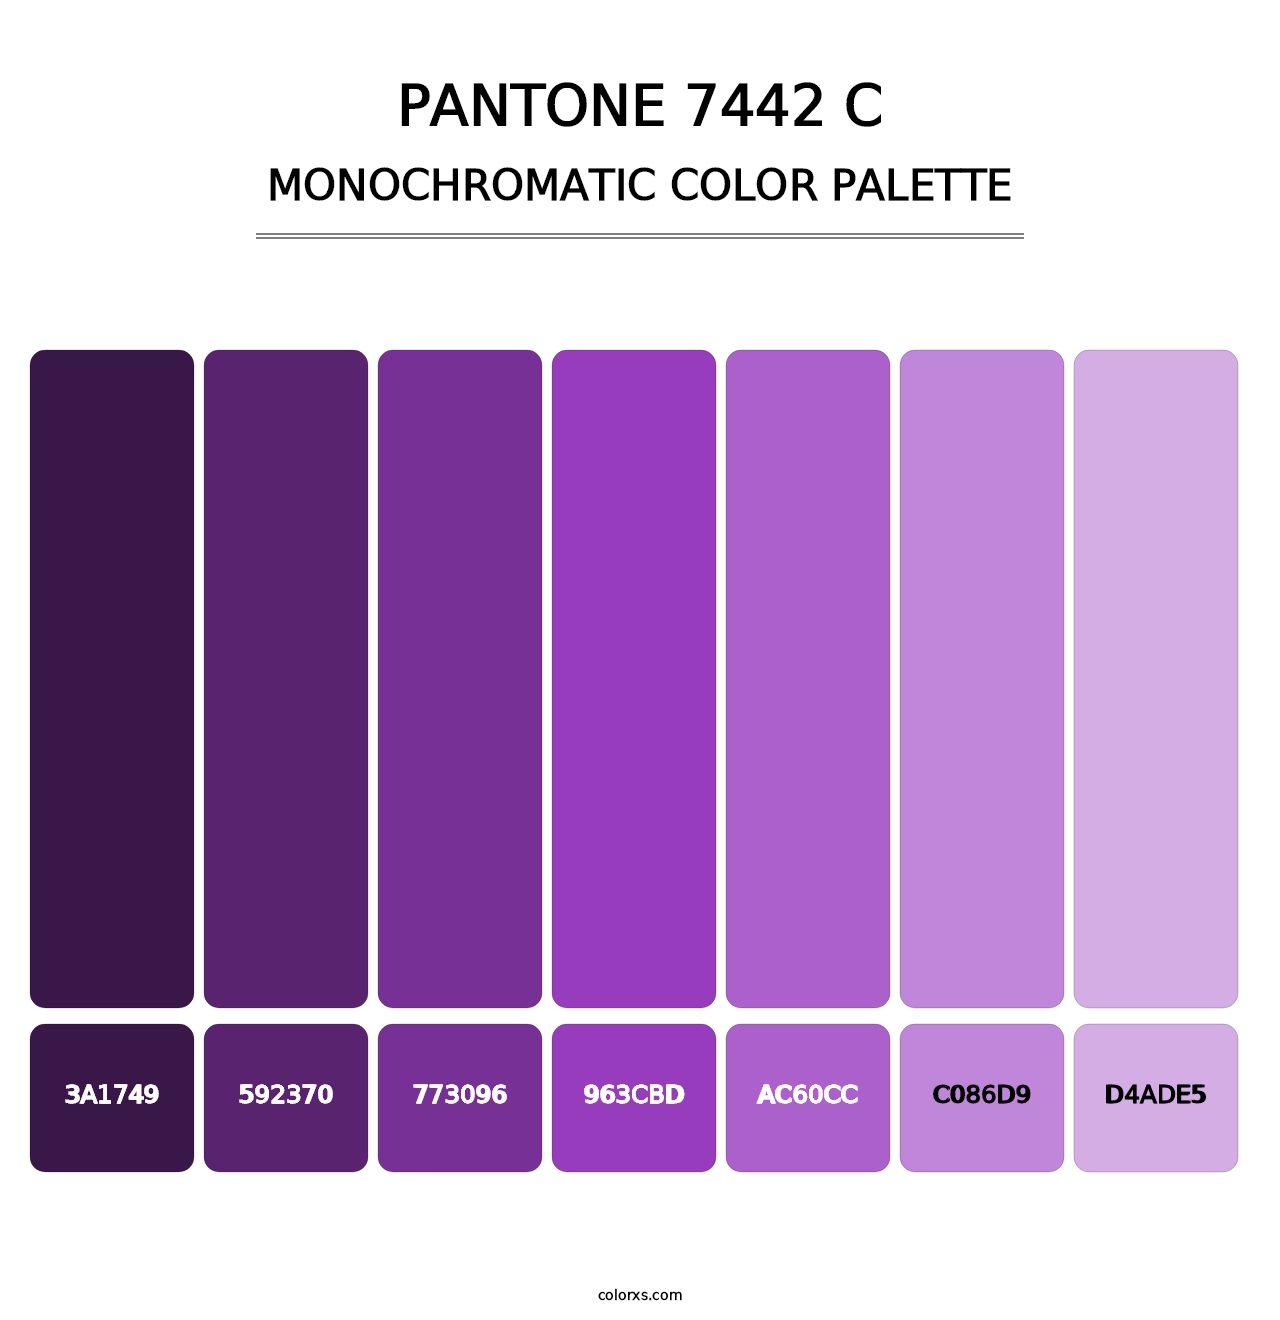 PANTONE 7442 C - Monochromatic Color Palette